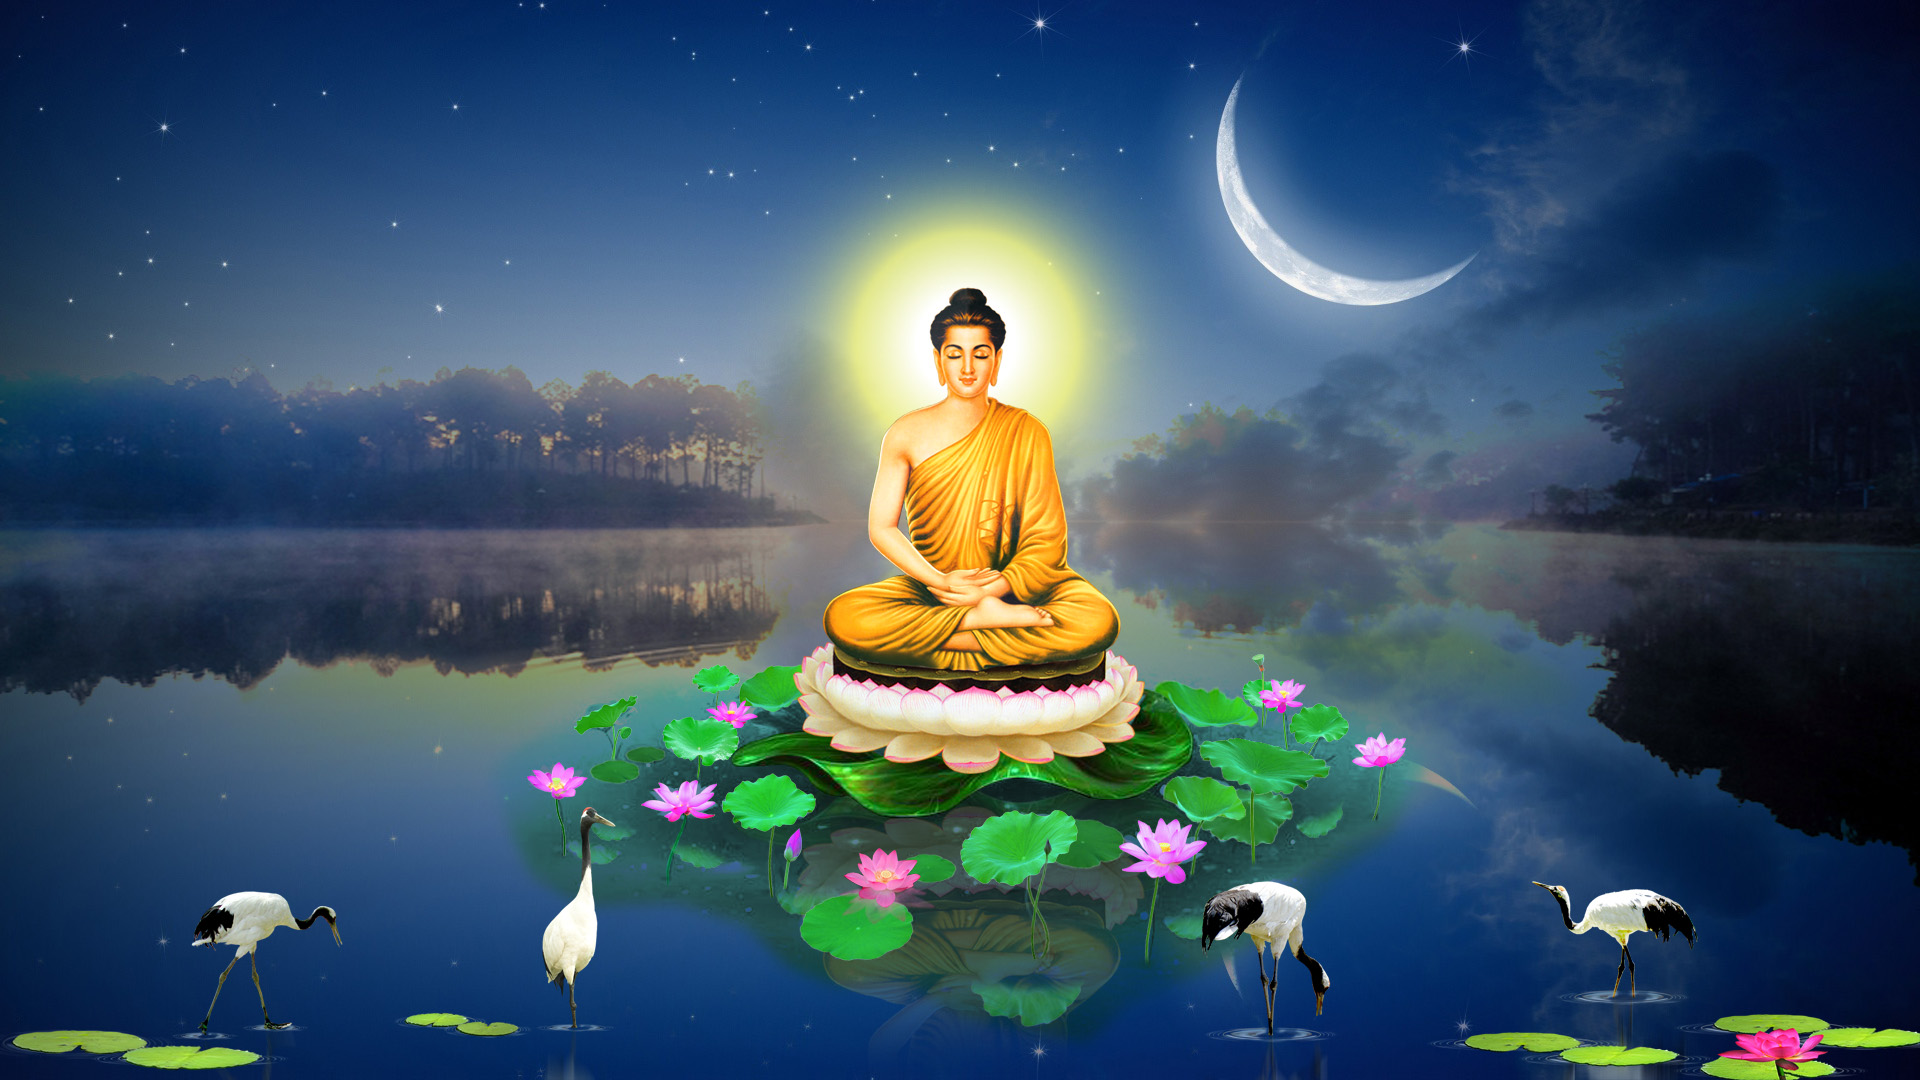 Bổn Sư Thích Ca Mâu Ni Phật là một vị thánh được tôn sùng trong đạo Phật. Bạn có muốn hiểu thêm về bổn sư này và tìm thấy bình an trong tâm hồn của mình? Hãy xem hình ảnh Bổn Sư Thích Ca Mâu Ni Phật để đắm mình trong vẻ đẹp và tôn giáo của đạo Phật.